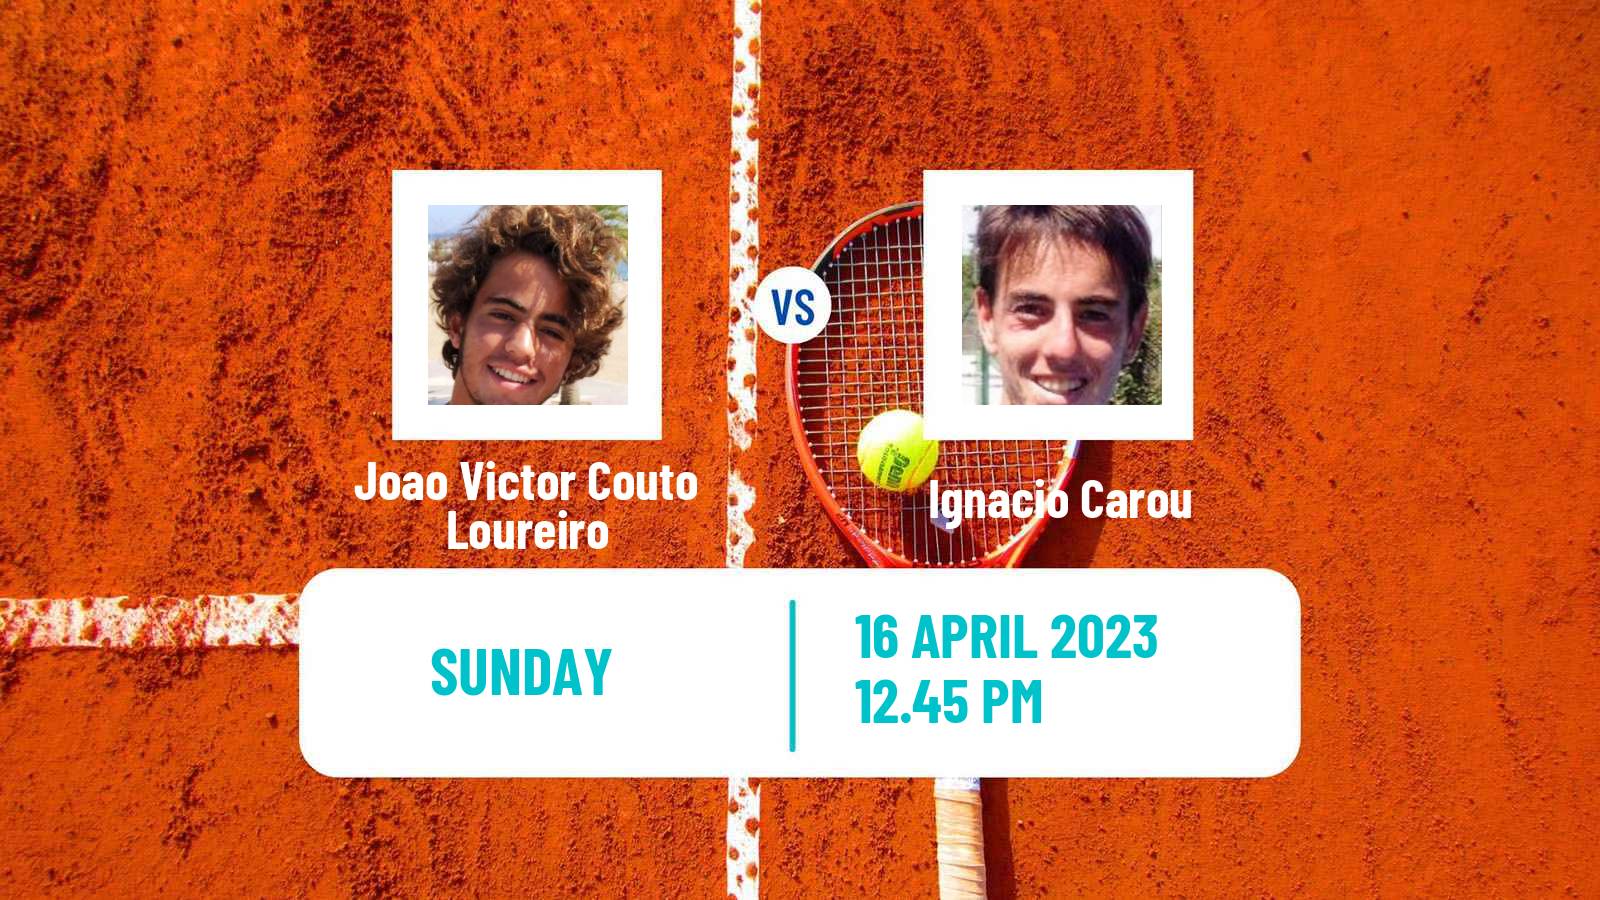 Tennis ATP Challenger Joao Victor Couto Loureiro - Ignacio Carou